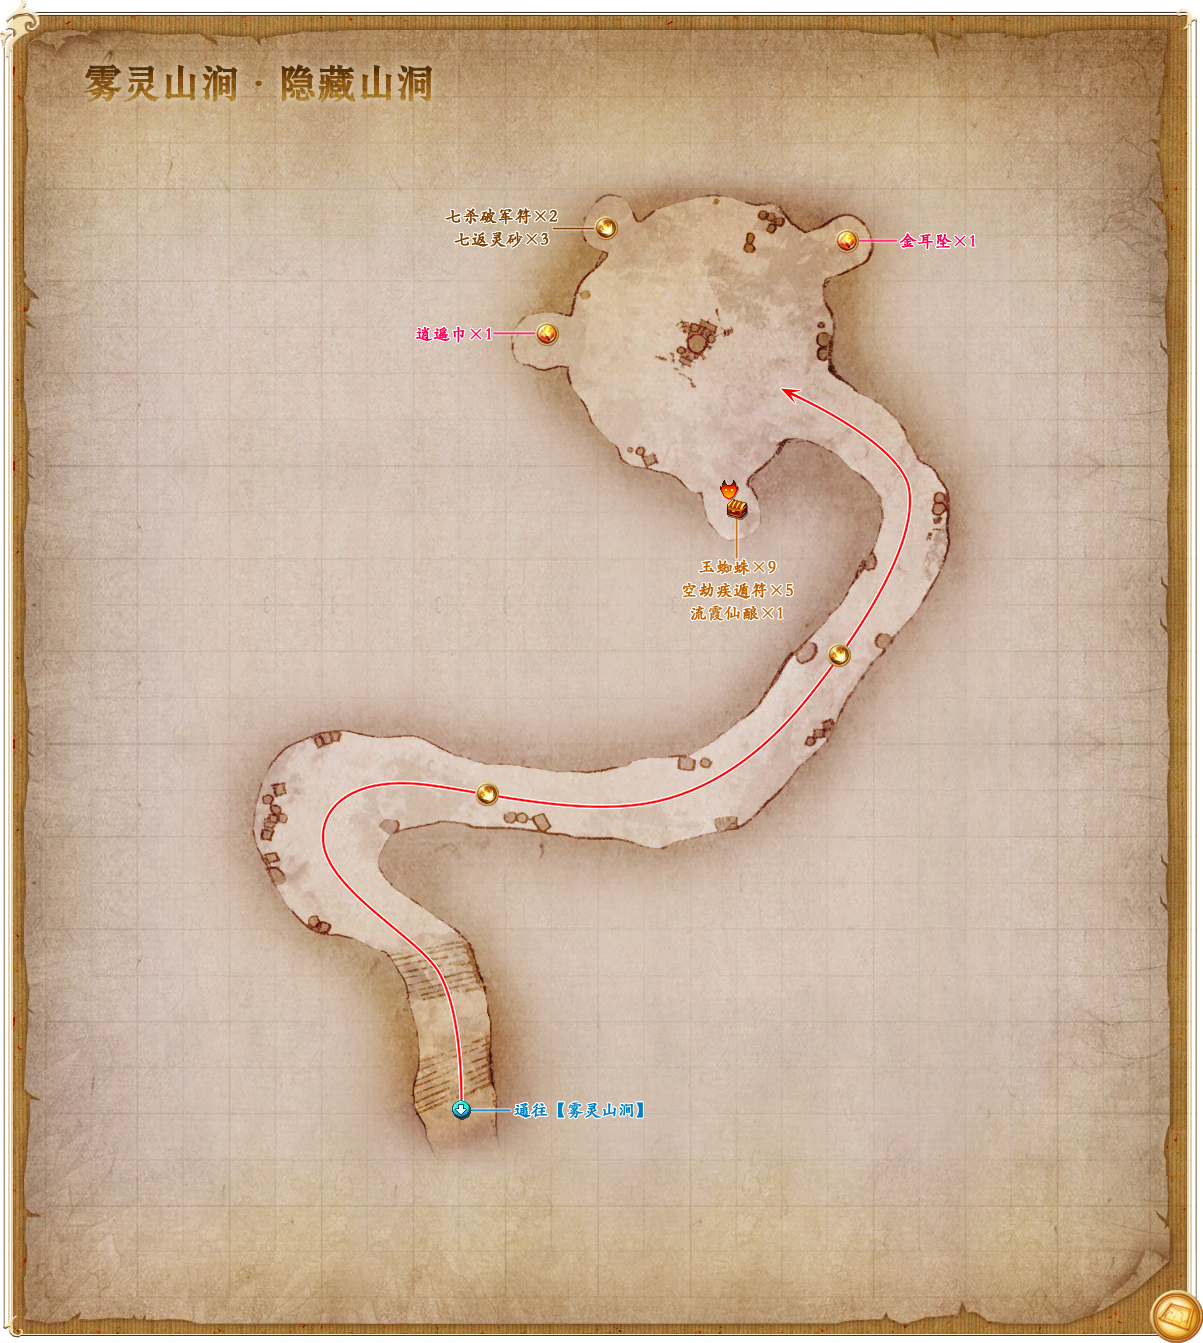 隱藏地圖：霧靈山澗秘密山洞